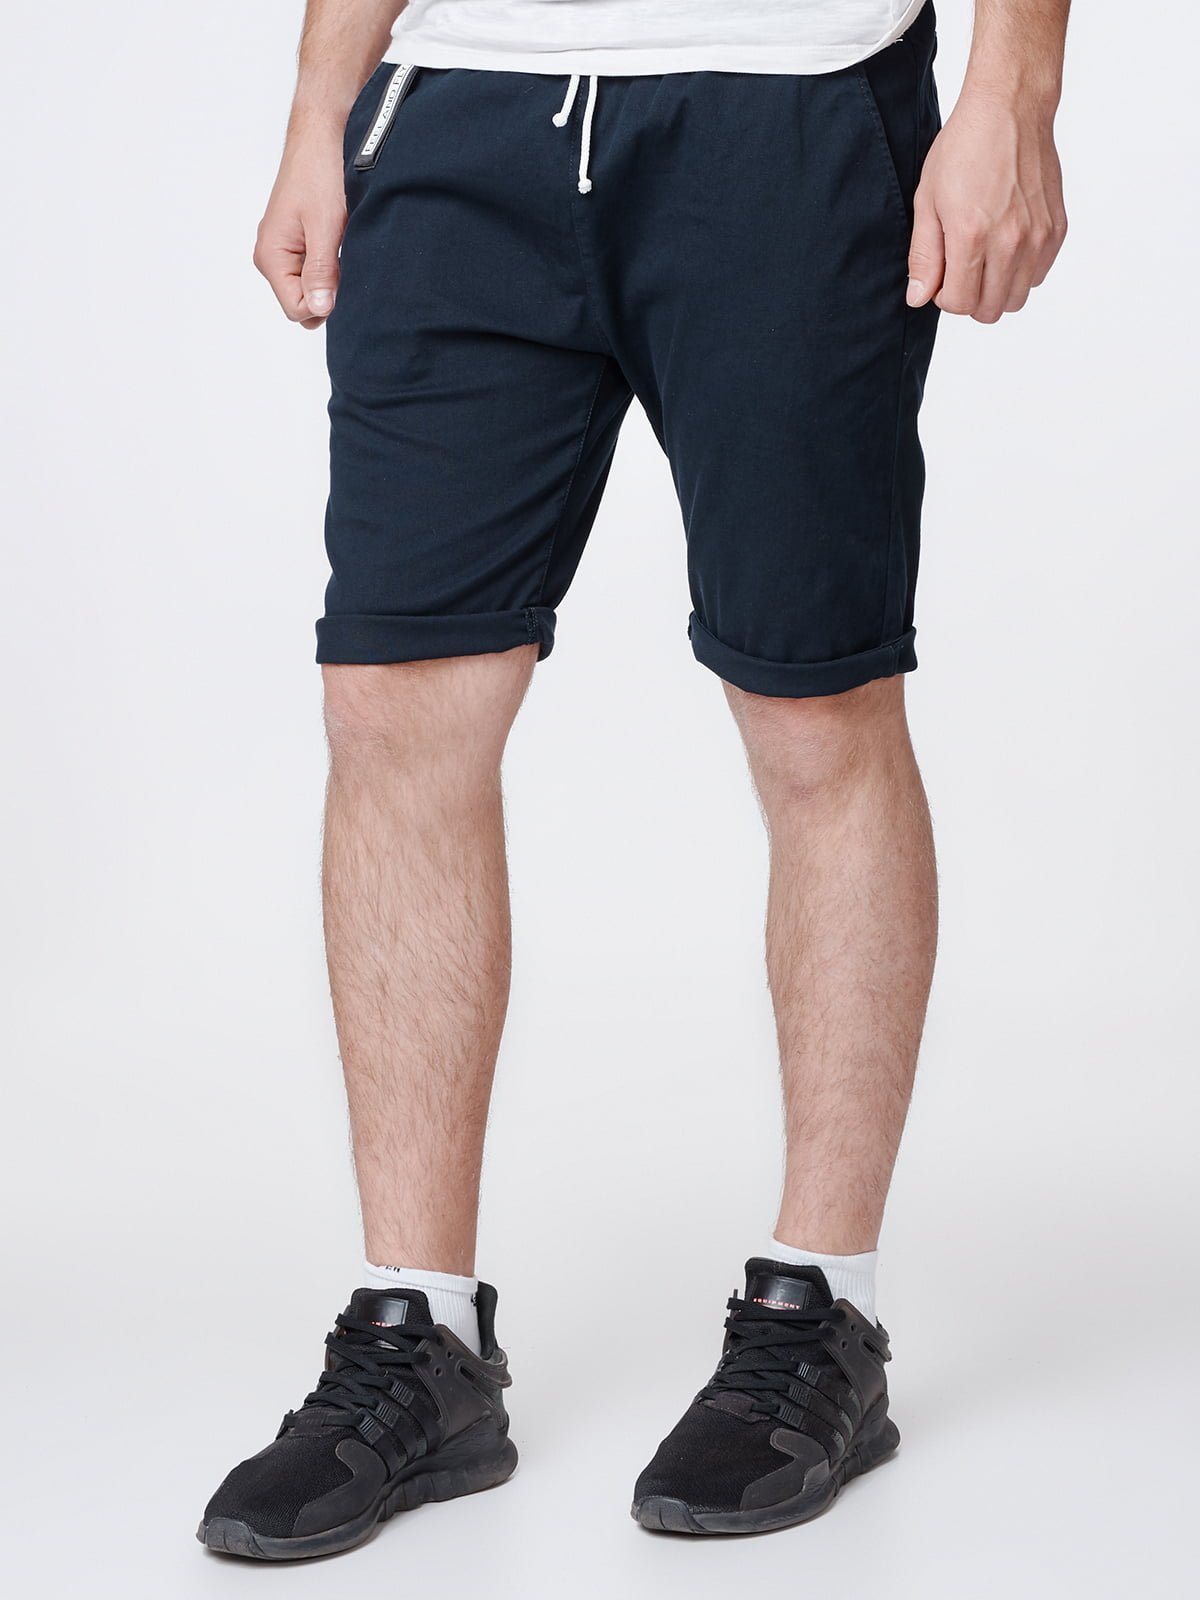 Мужские шорты выше колена - 69 фото